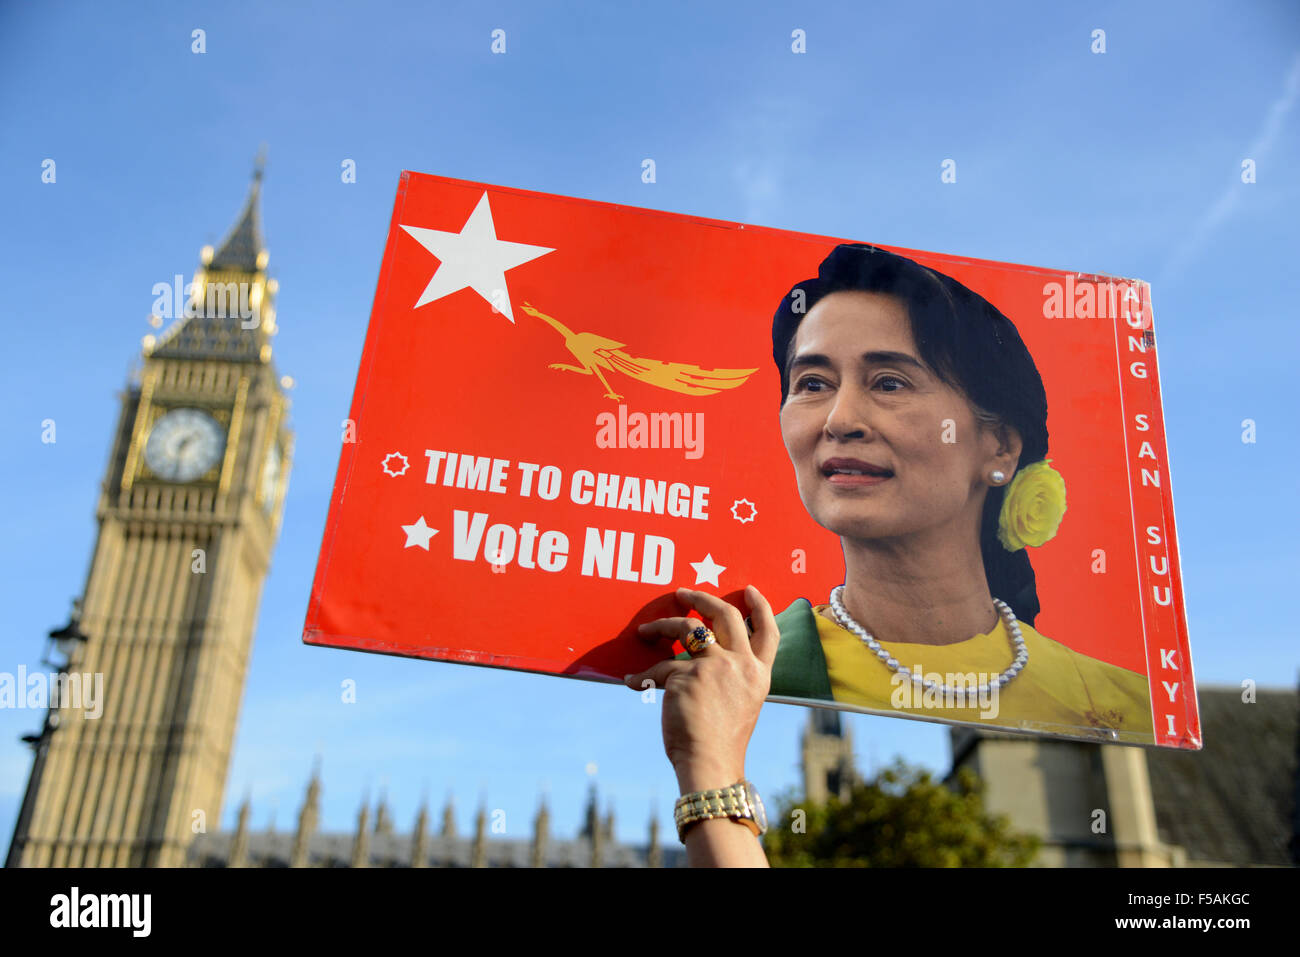 Ligue nationale pour la démocratie en Birmanie à l'extérieur du parlement de campagne à Londres, Angleterre, Royaume-Uni Banque D'Images